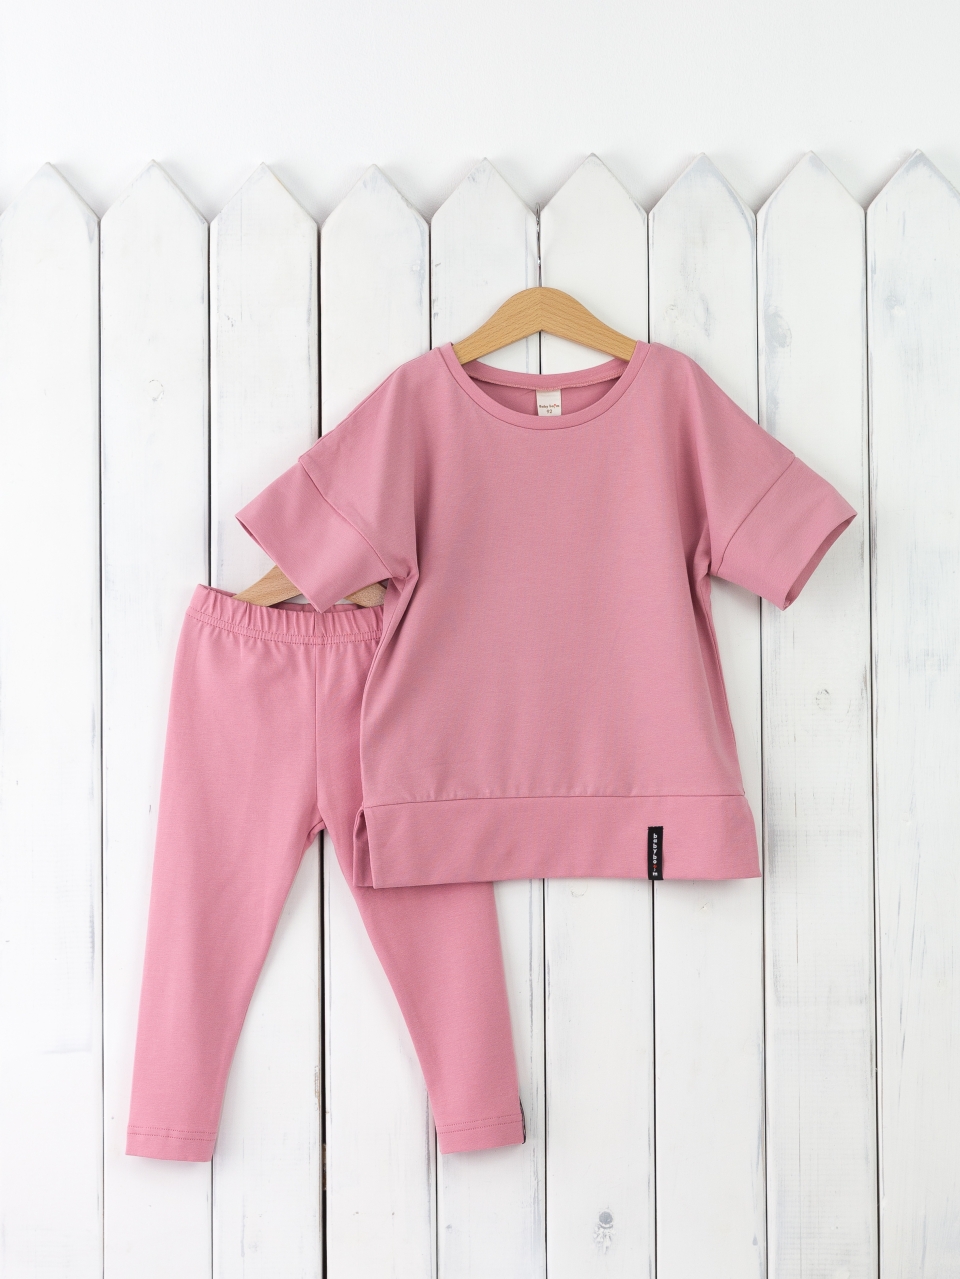 КД352/11-К Комплект для девочки р.110 футболка+легинсы/розовый зефир Бэби Бум - Магнитогорск 